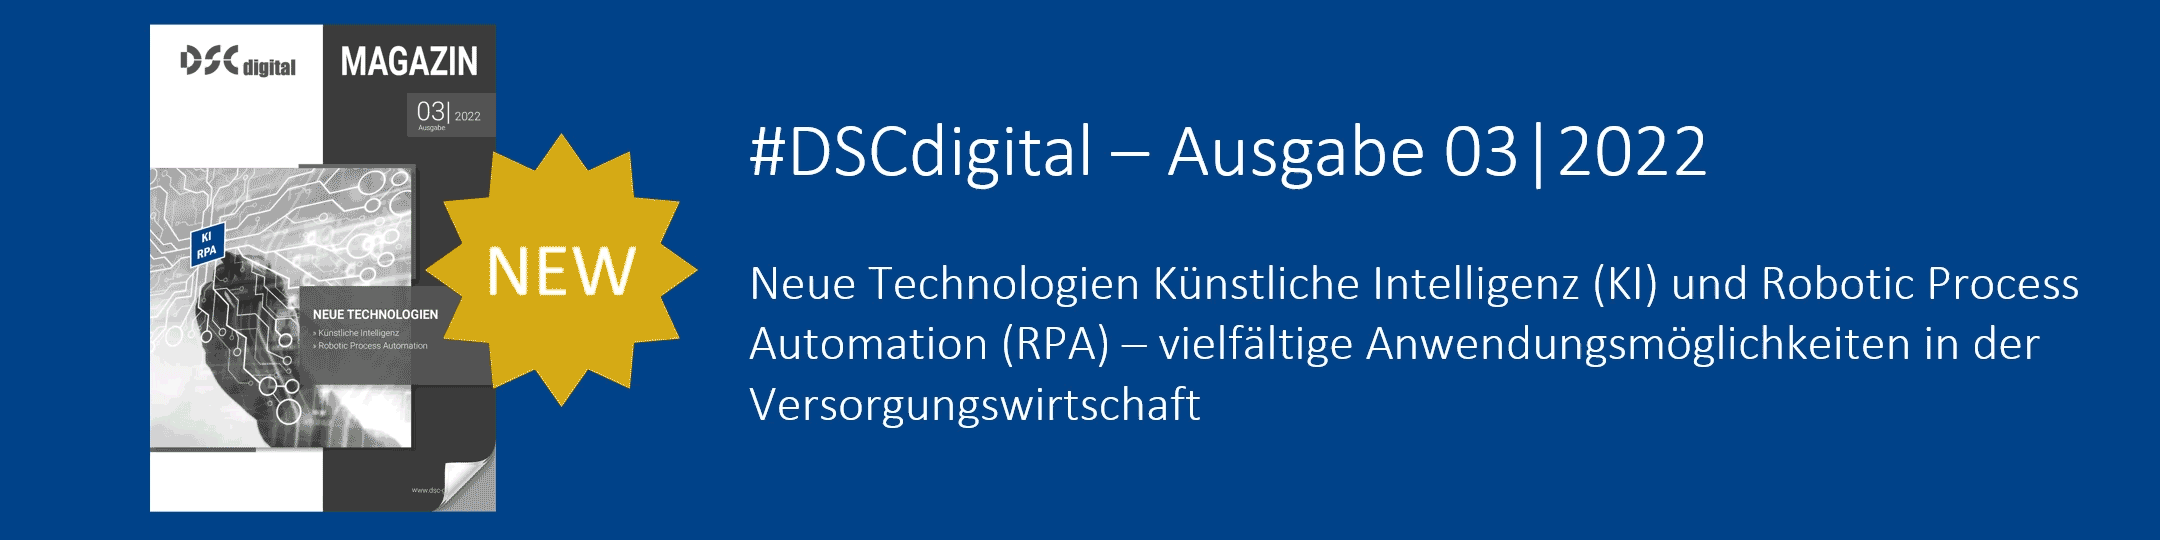 DSCdigital - Ausgabe 03/2022 - KI und RPA